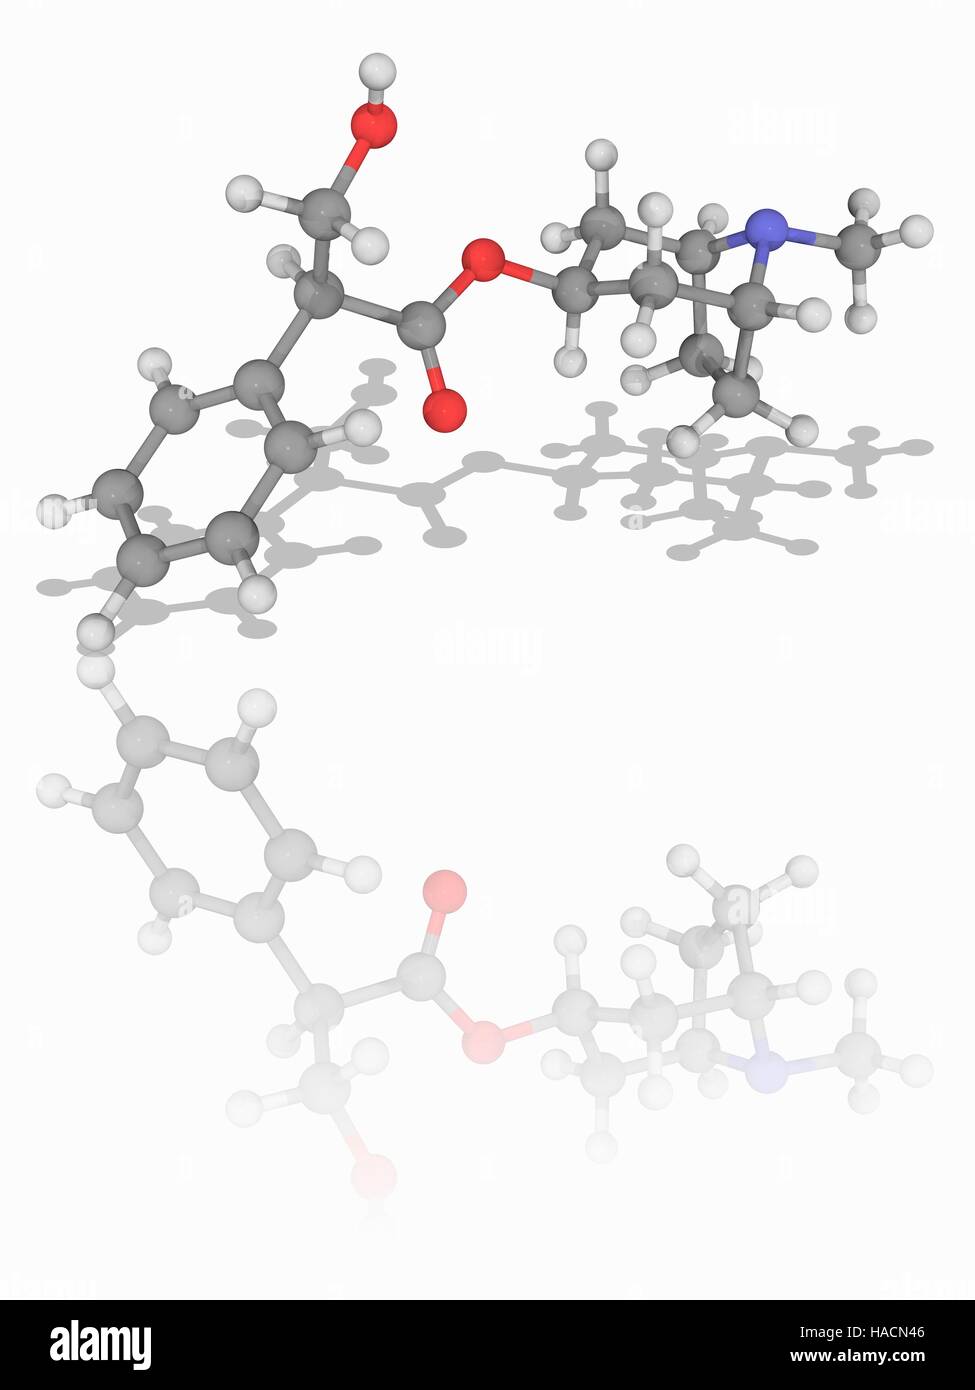 Atropina. Il modello molecolare del tropane farmaco alcaloide atropina (C17.H23.N.O3). Questo naturalmente è alcaloide estratto da piante come la belladonna per produrre un anti-droga colinergici (uno che blocca l'azione del neurotrasmettitore acetilcolina). Atropina dilata gli alunni, aumenta la frequenza cardiaca e riduce la salivazione. Gli atomi sono rappresentati da sfere e sono codificati a colori: carbonio (grigio), Idrogeno (bianco), Azoto (blu) e ossigeno (rosso). Illustrazione. Foto Stock